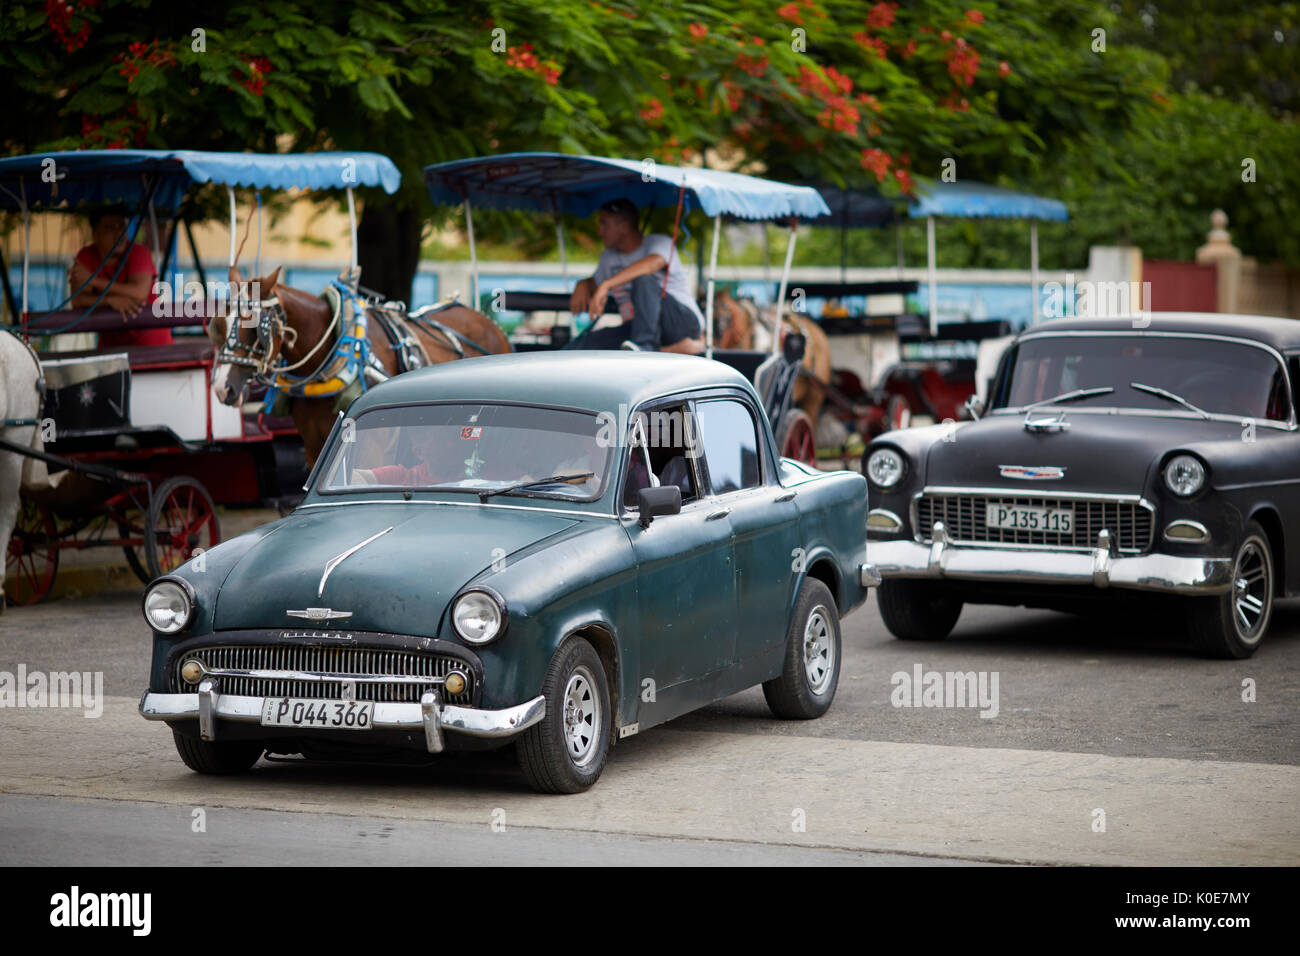 Kubanische classic retro Cars eine britische Hillman Minx und eine Amerikanische Chevrolet in Varadero, Kuba, einer karibischen Insel Nation unter kommunistischer Herrschaft Stockfoto